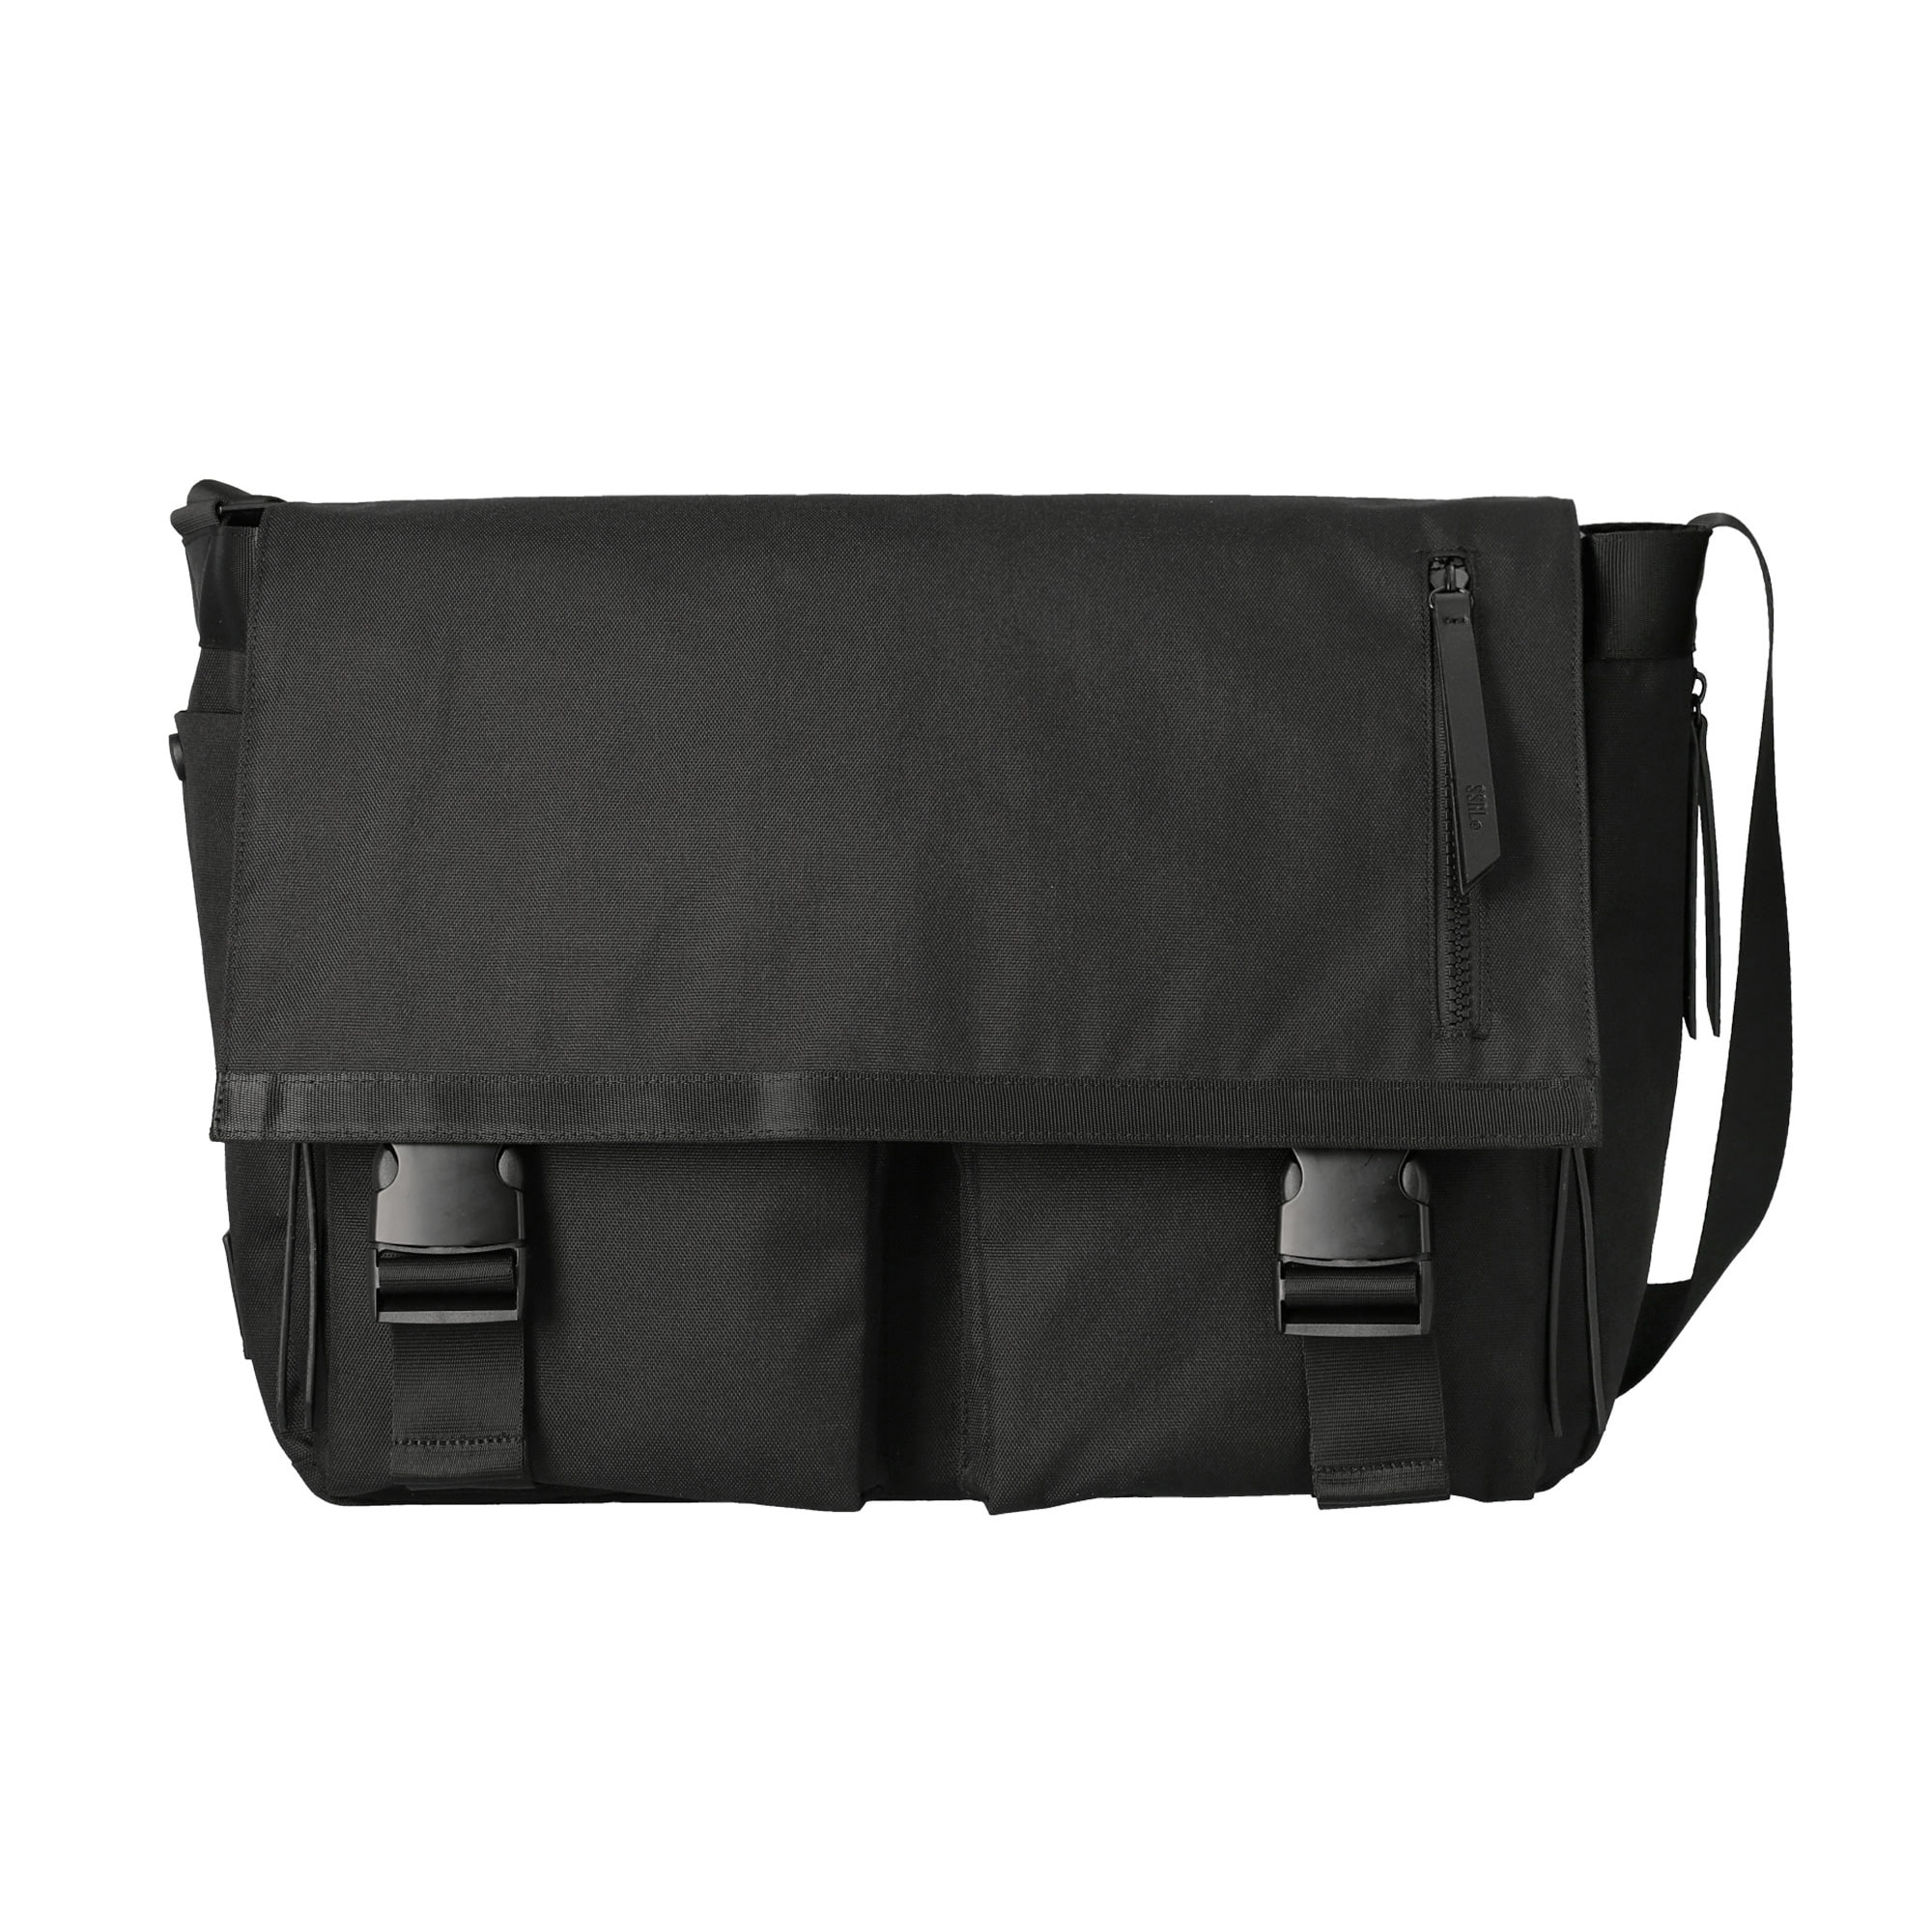 dual pocket messenger bag / black